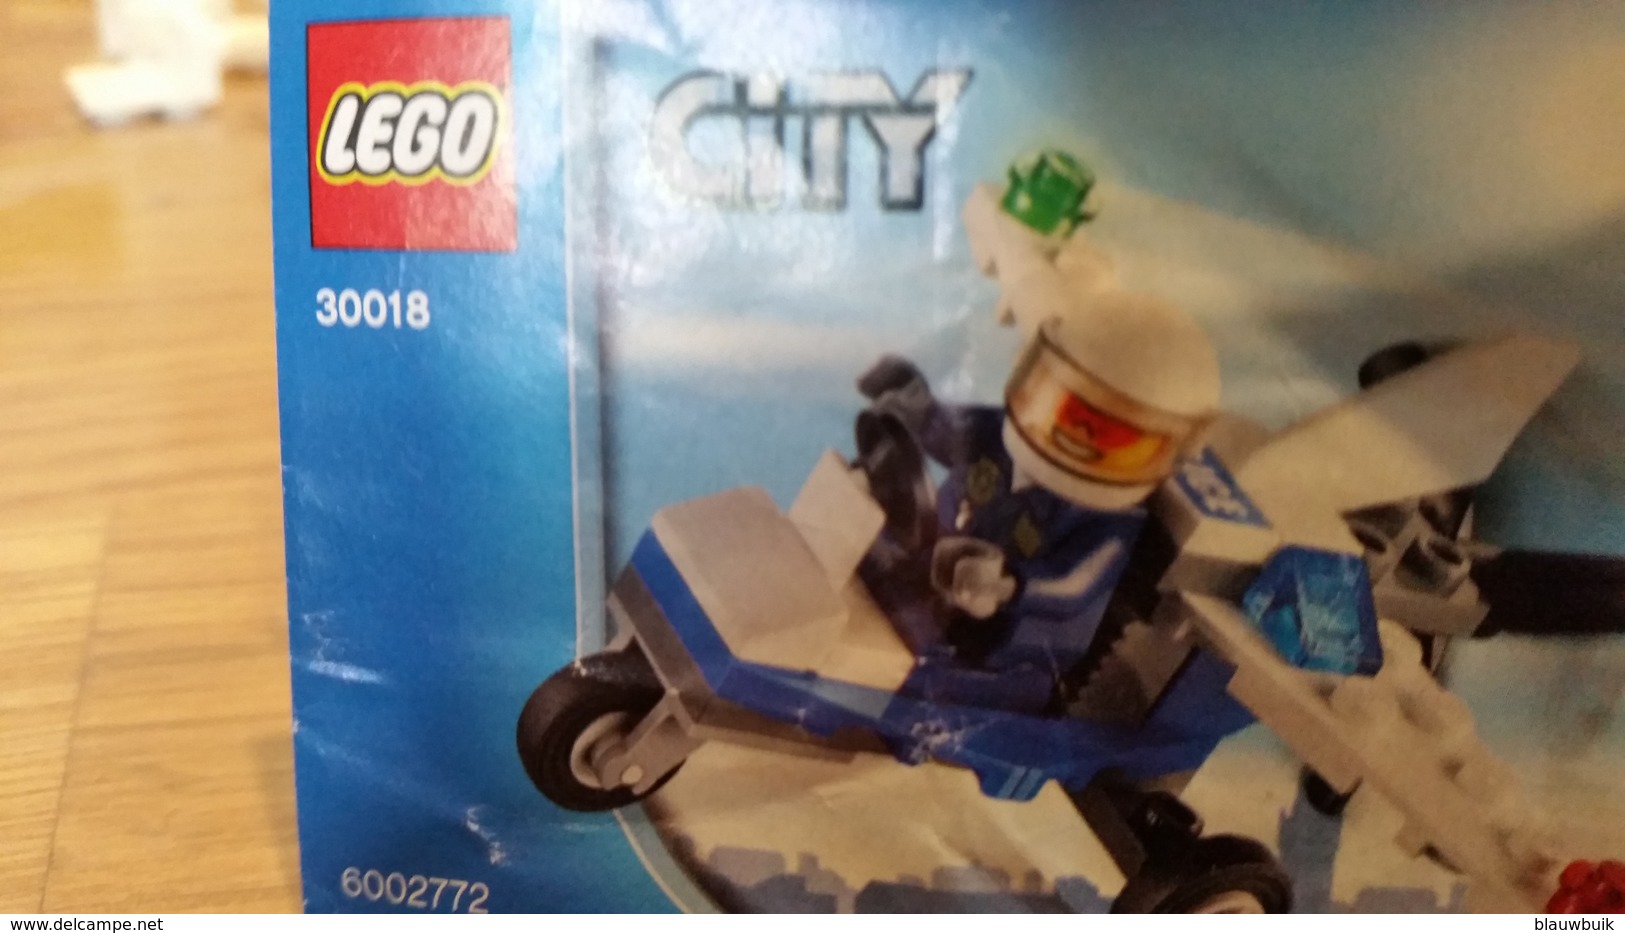 LEGO City 30018 Politie Microlight - Figures